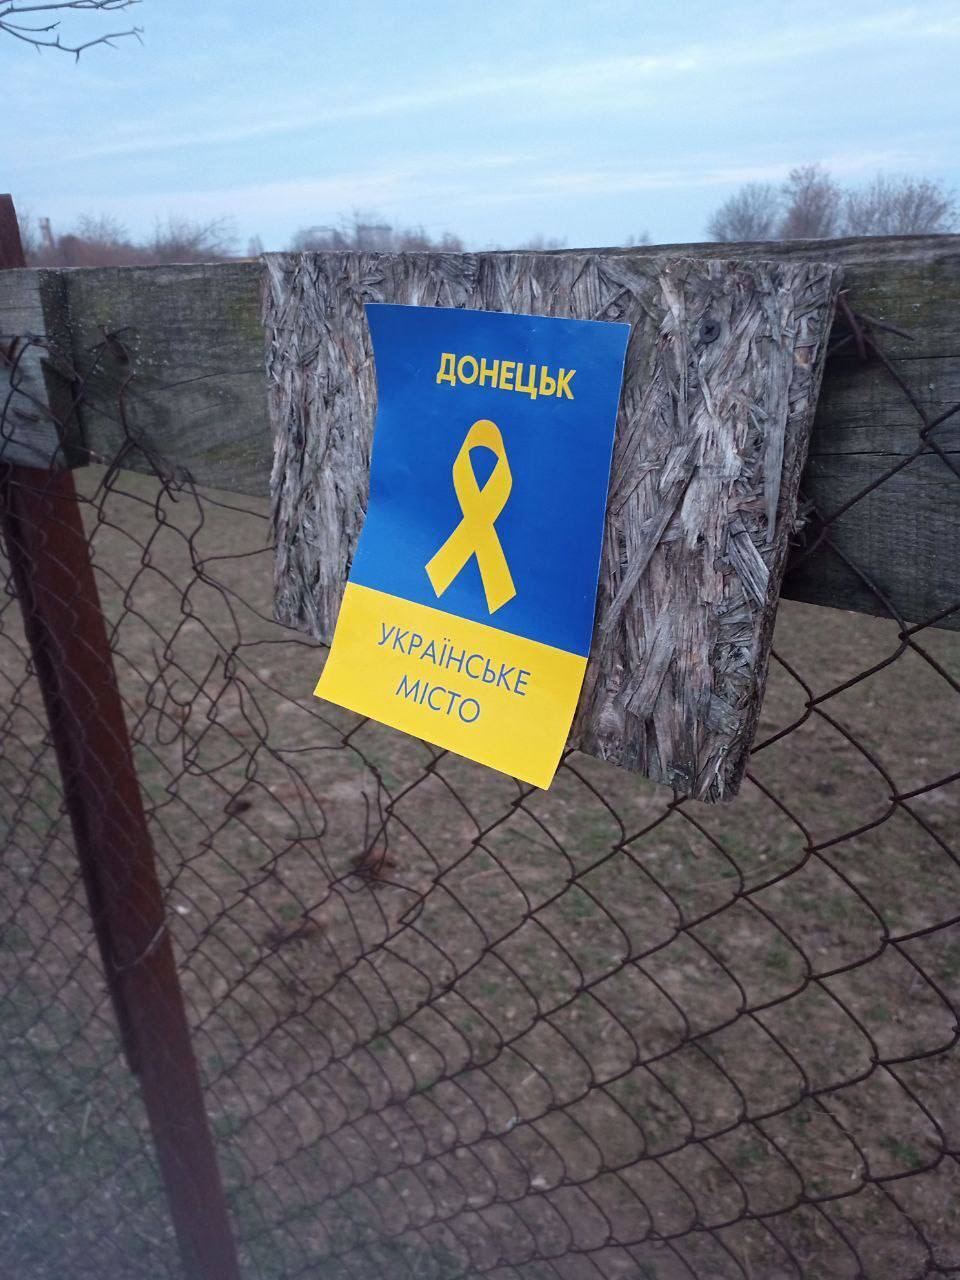 "Донецк – это Украина": партизаны устроили смелую акцию в оккупированном городе и сделали предупреждение захватчикам. Фото